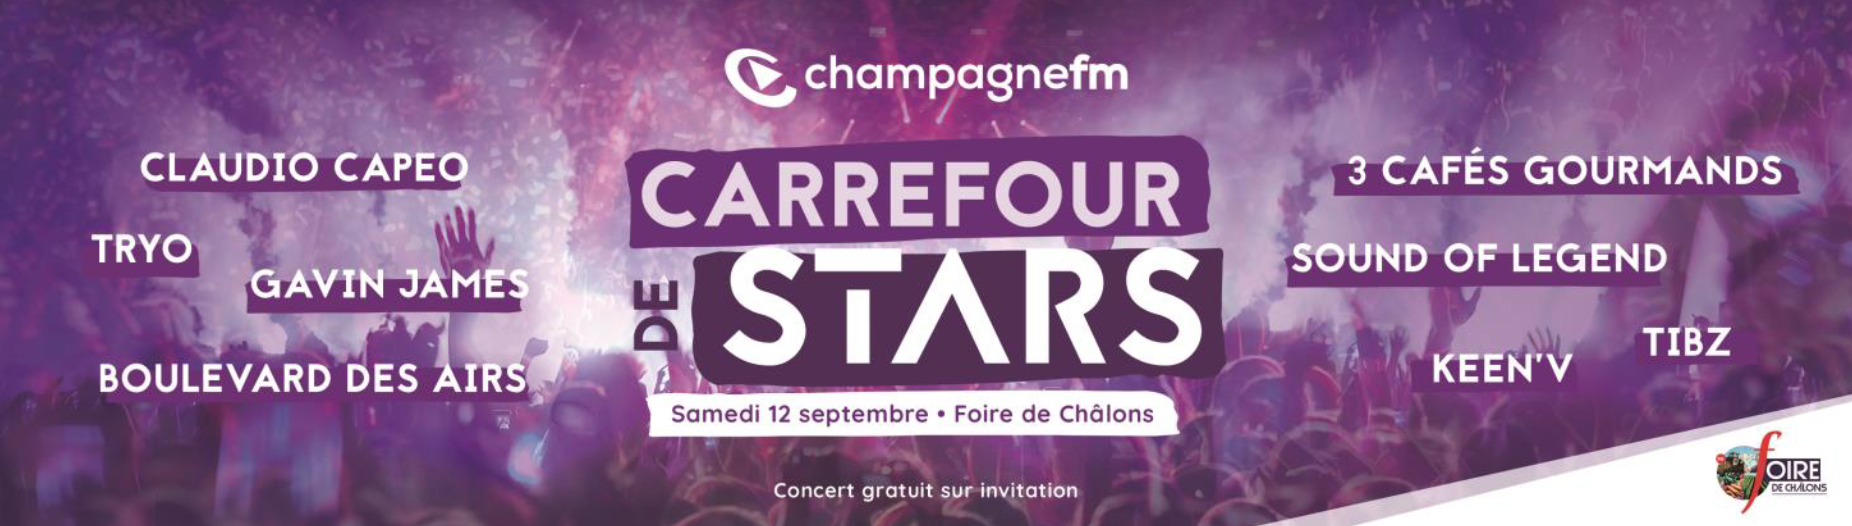 Annulation du "Carrefour de Stars" de Champagne FM